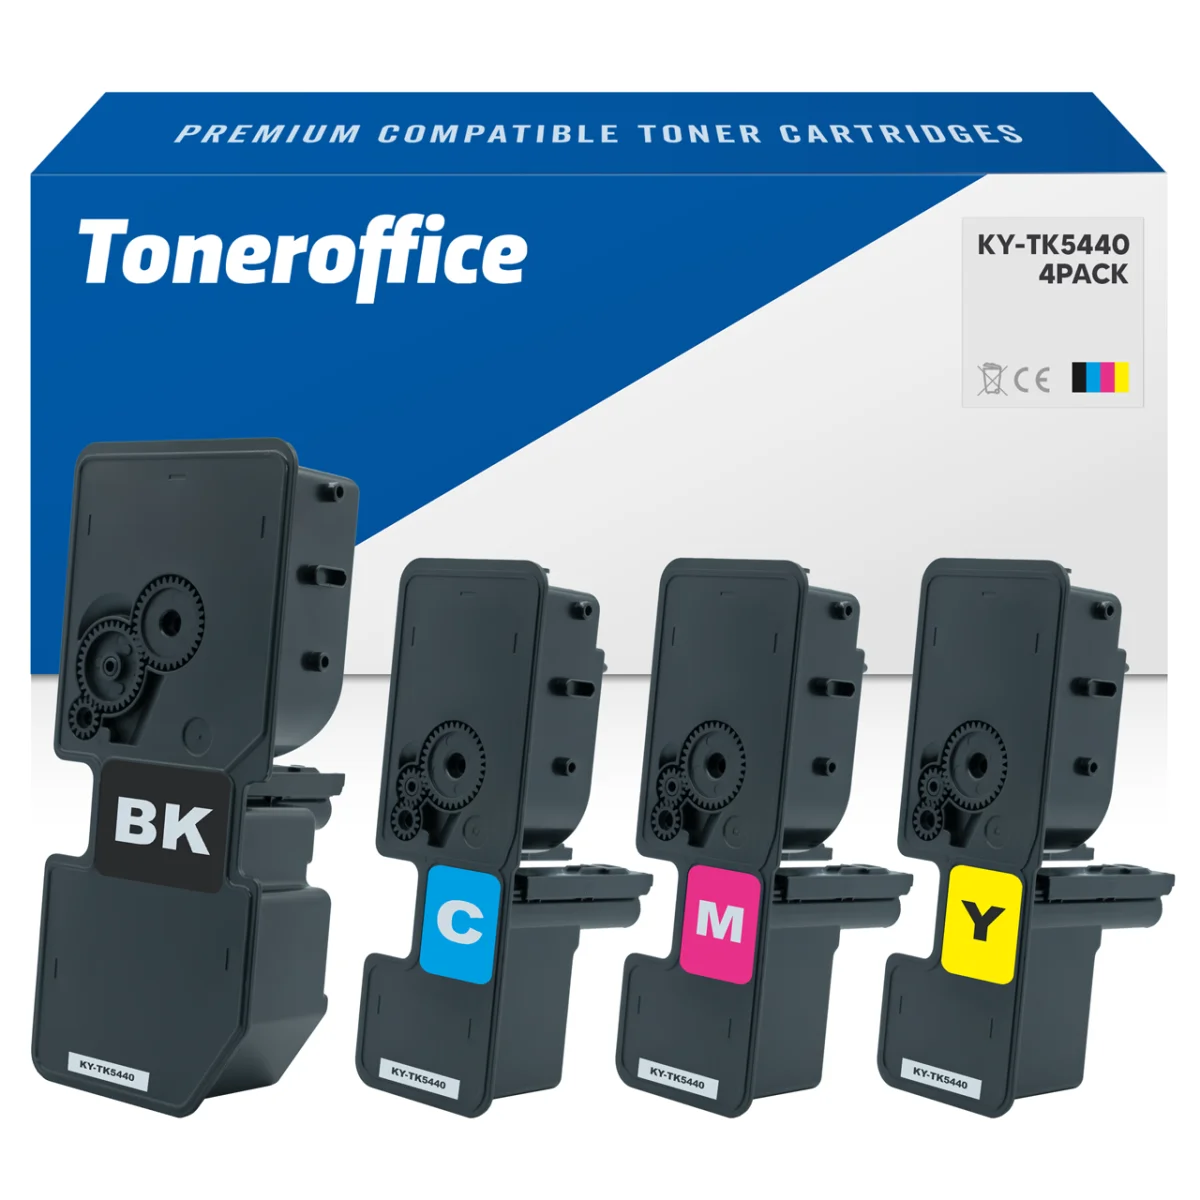 https://toneroffice.de/bilder/news/48/kompatibel-zu-kyocera-tk-5440-toner-bk-c-m-y-4er-set-multipack_preview.png